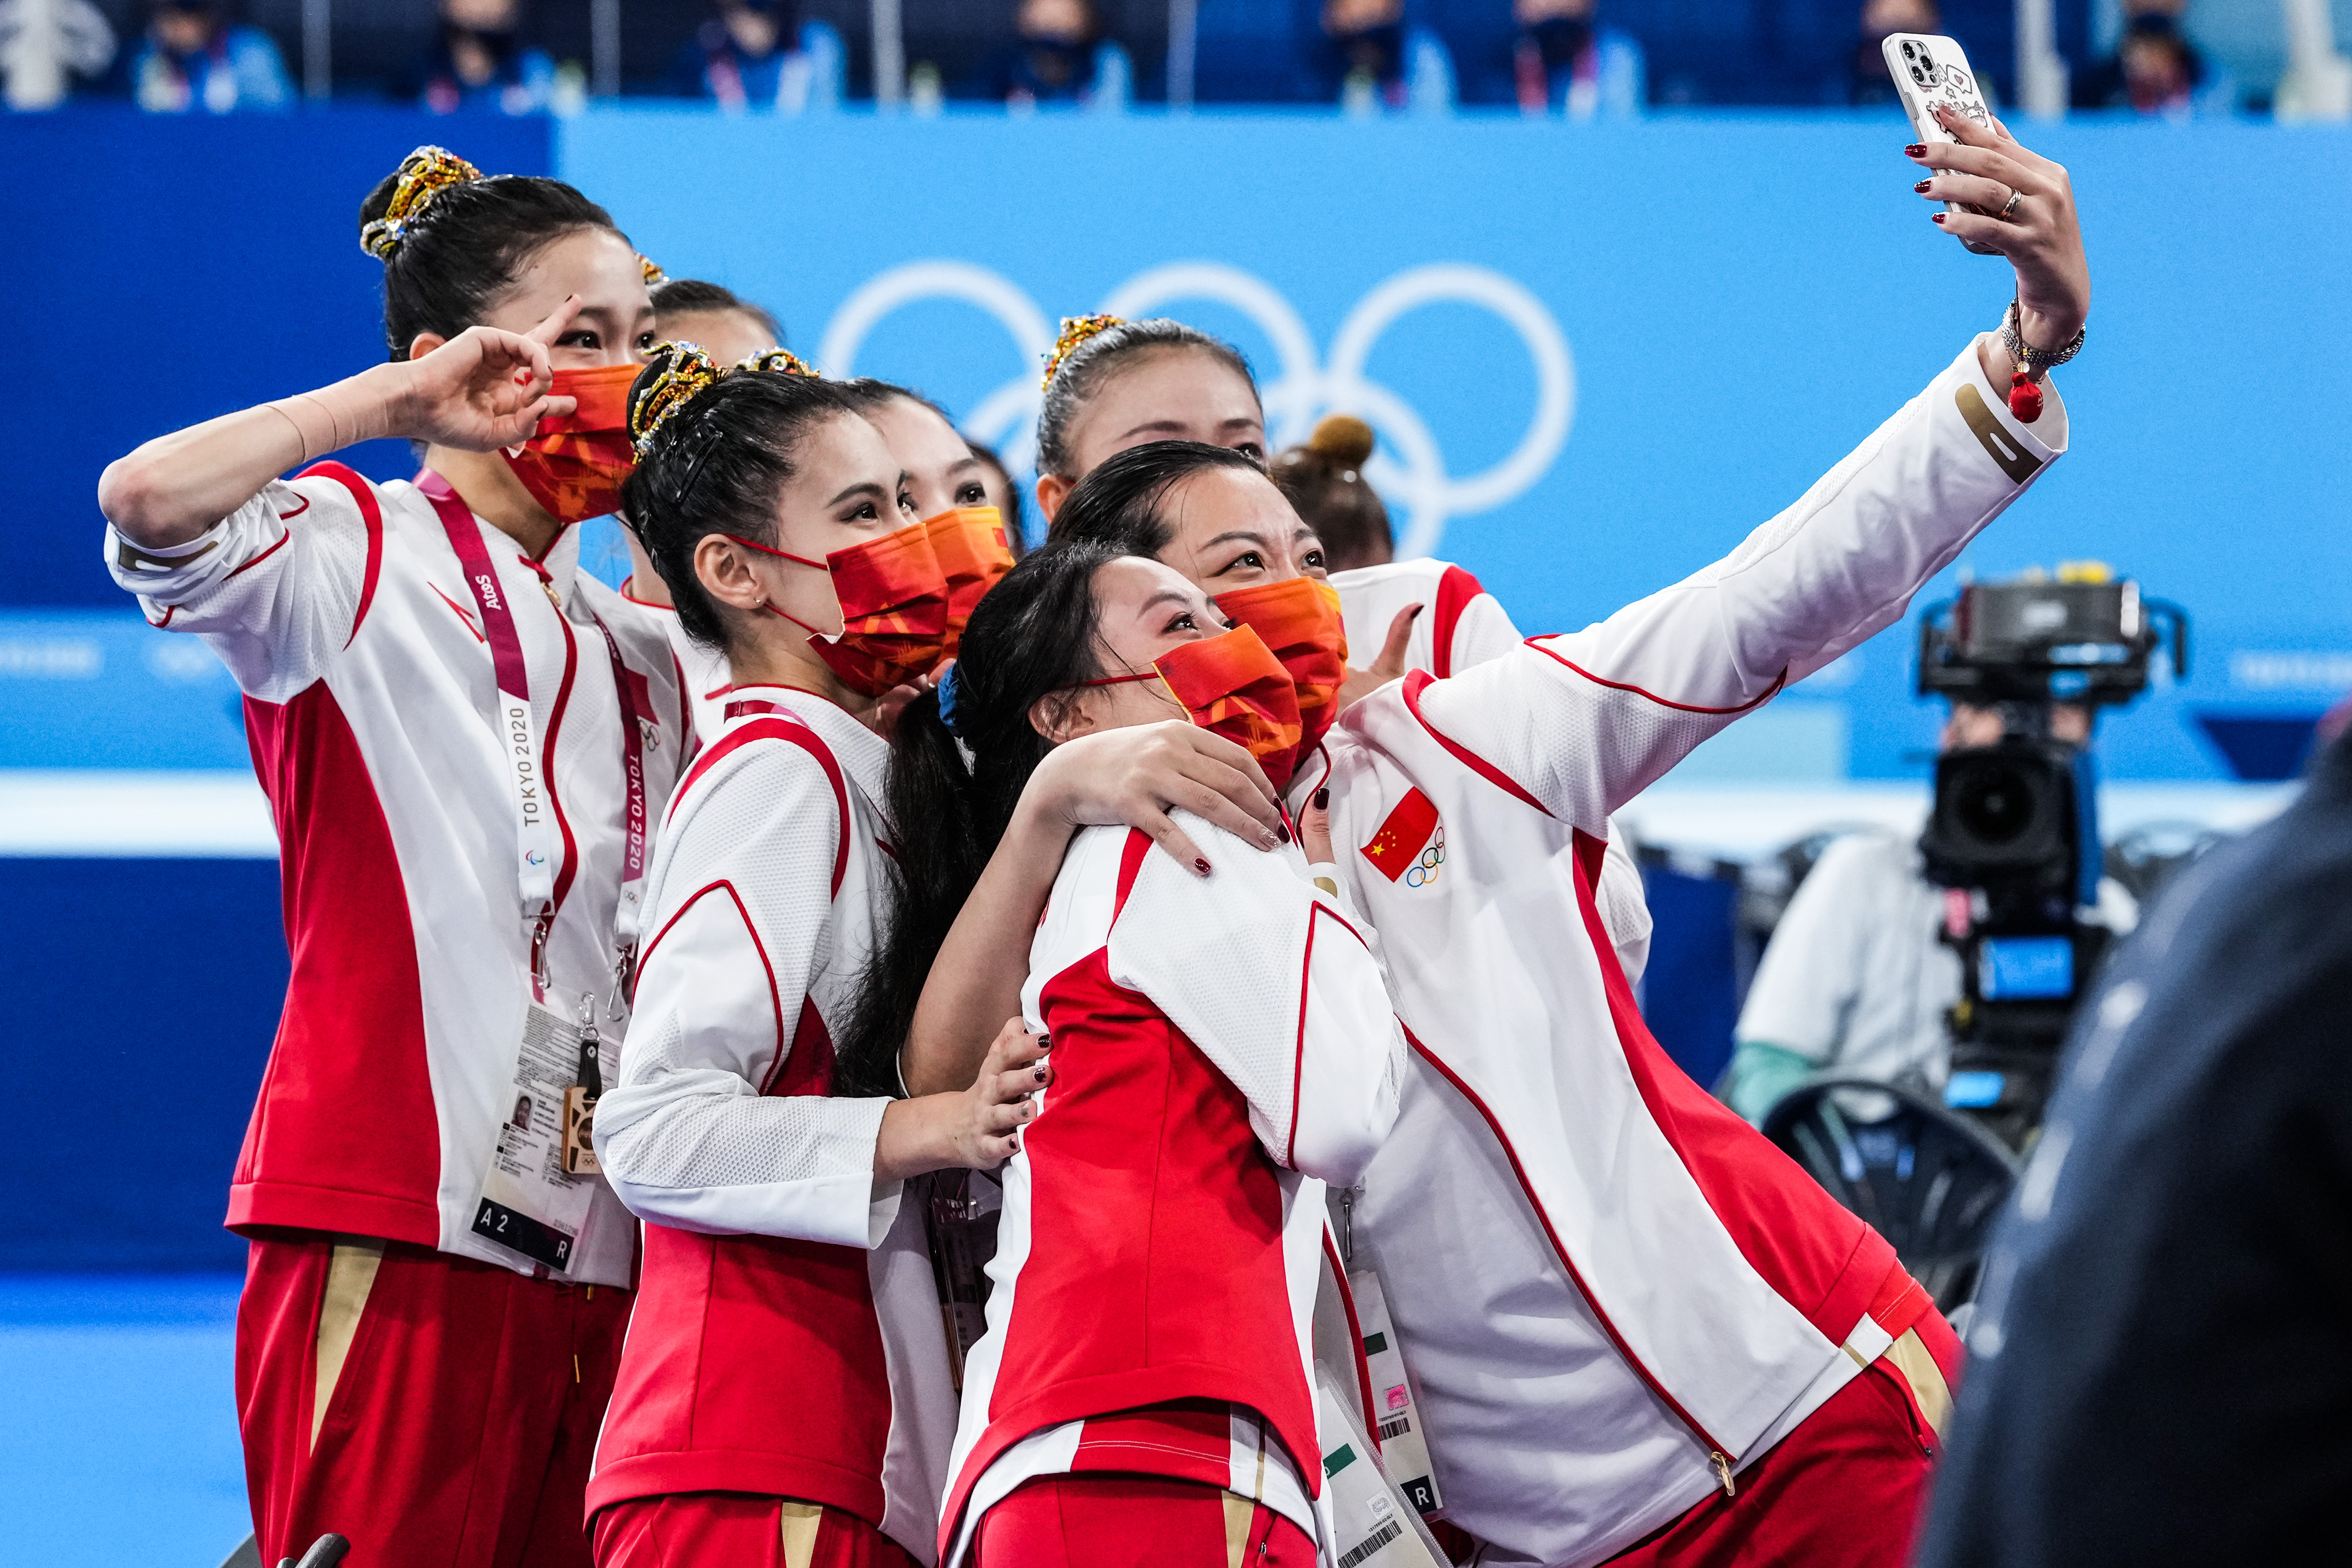 中国艺术体操队的姑娘们赛后自拍合影。